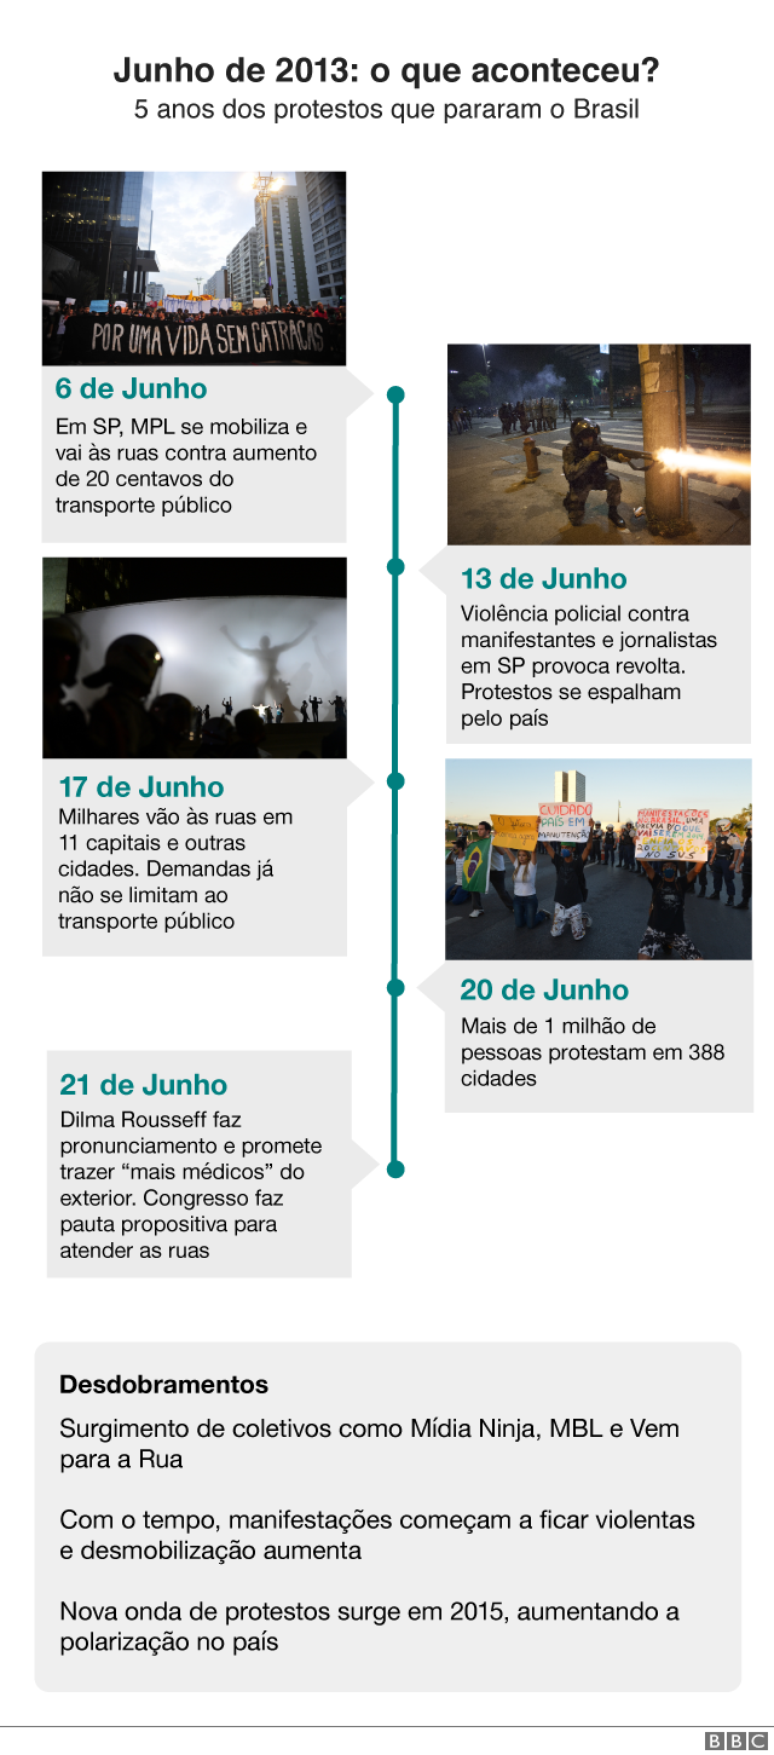 Fotos ilustrativas dos protestos de 2013 que não necessariamente correspondem aos dias indicados; crédito das imagens: Ag. Brasil